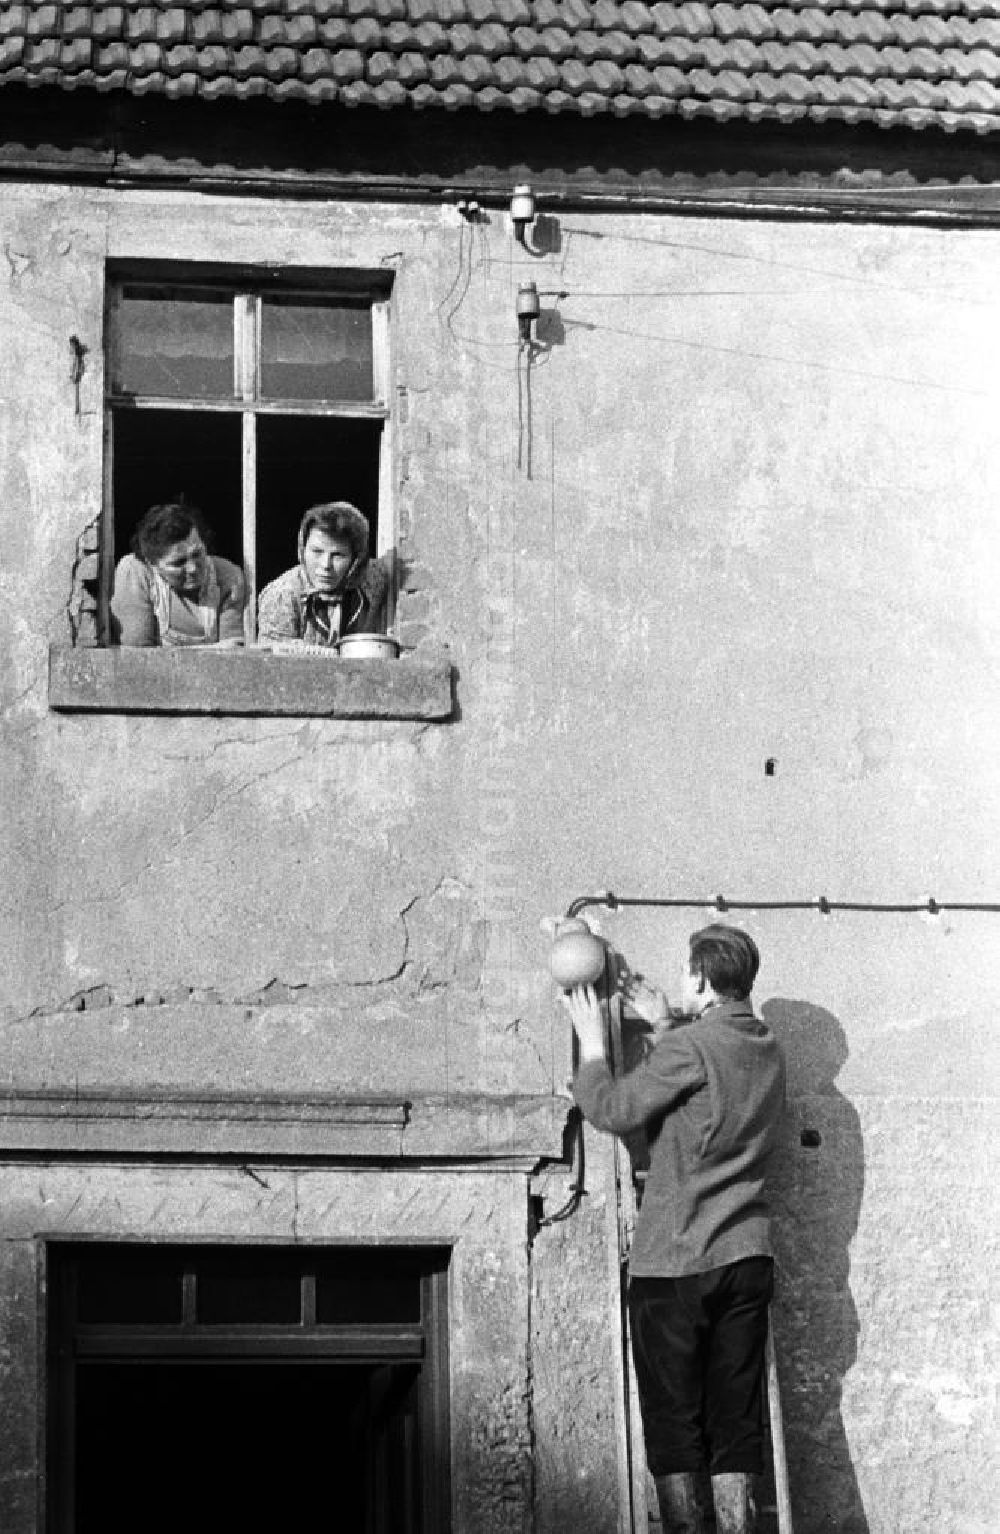 GDR photo archive: Leipzig - Ein Mann steht an einer Hauswand auf einer Leiter und repariert eine Lampe, zwei Frauen schauen ihm aus dem Fenster heraus dabei zu.